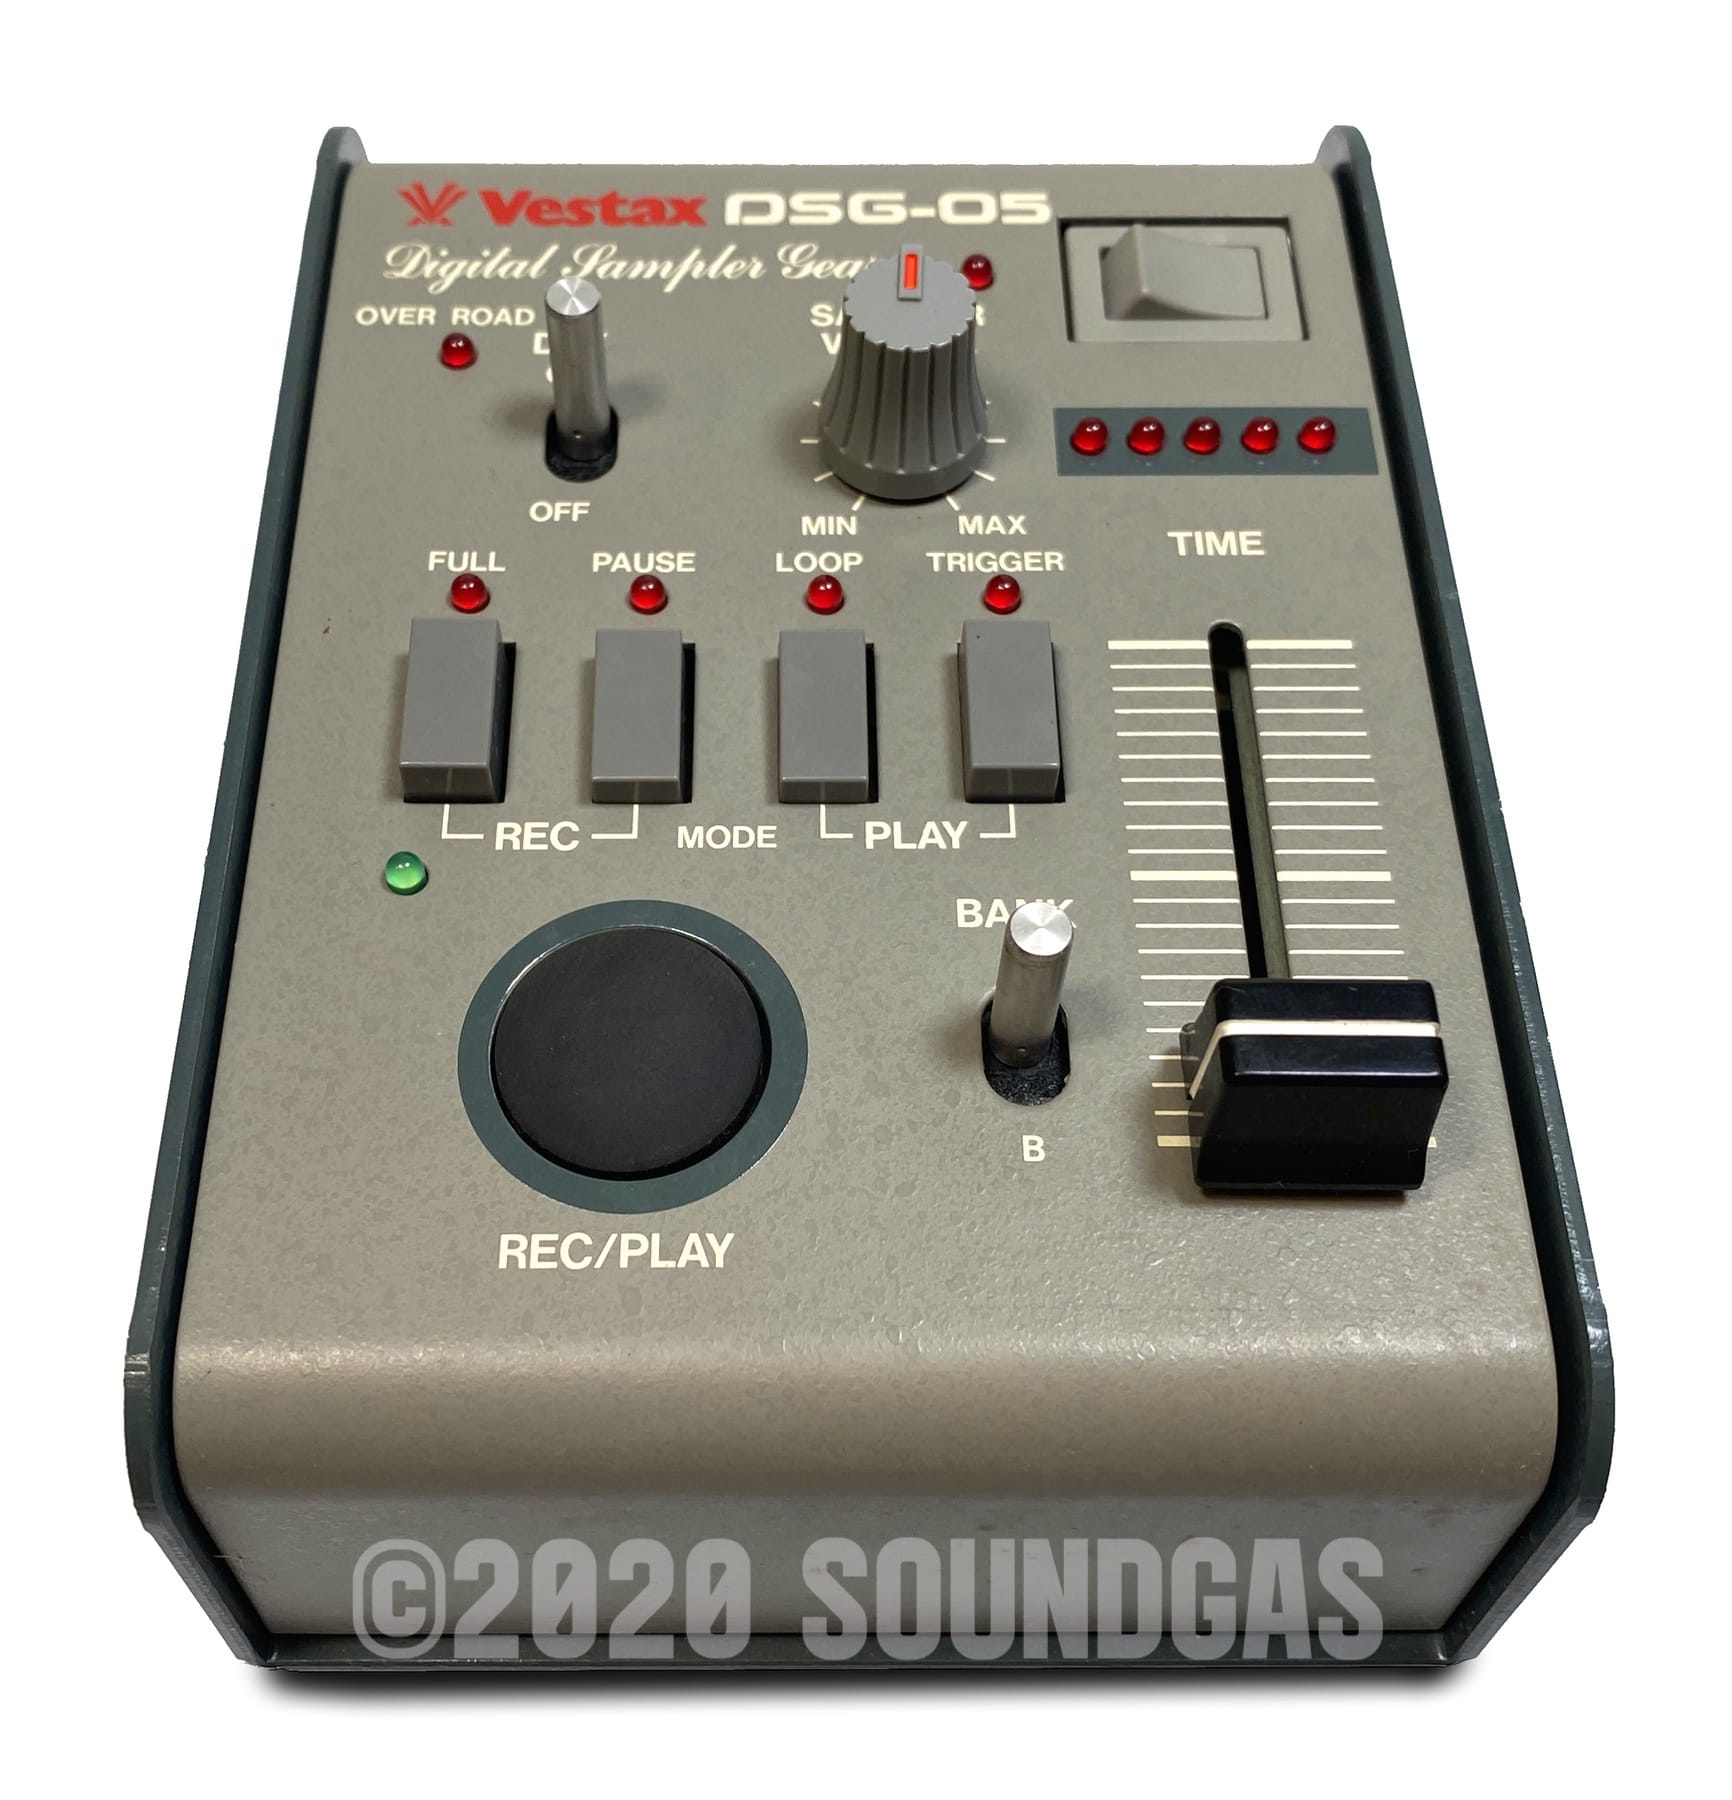 Vestax DSG-05 Digital Sampling Gear FOR SALE - Soundgas